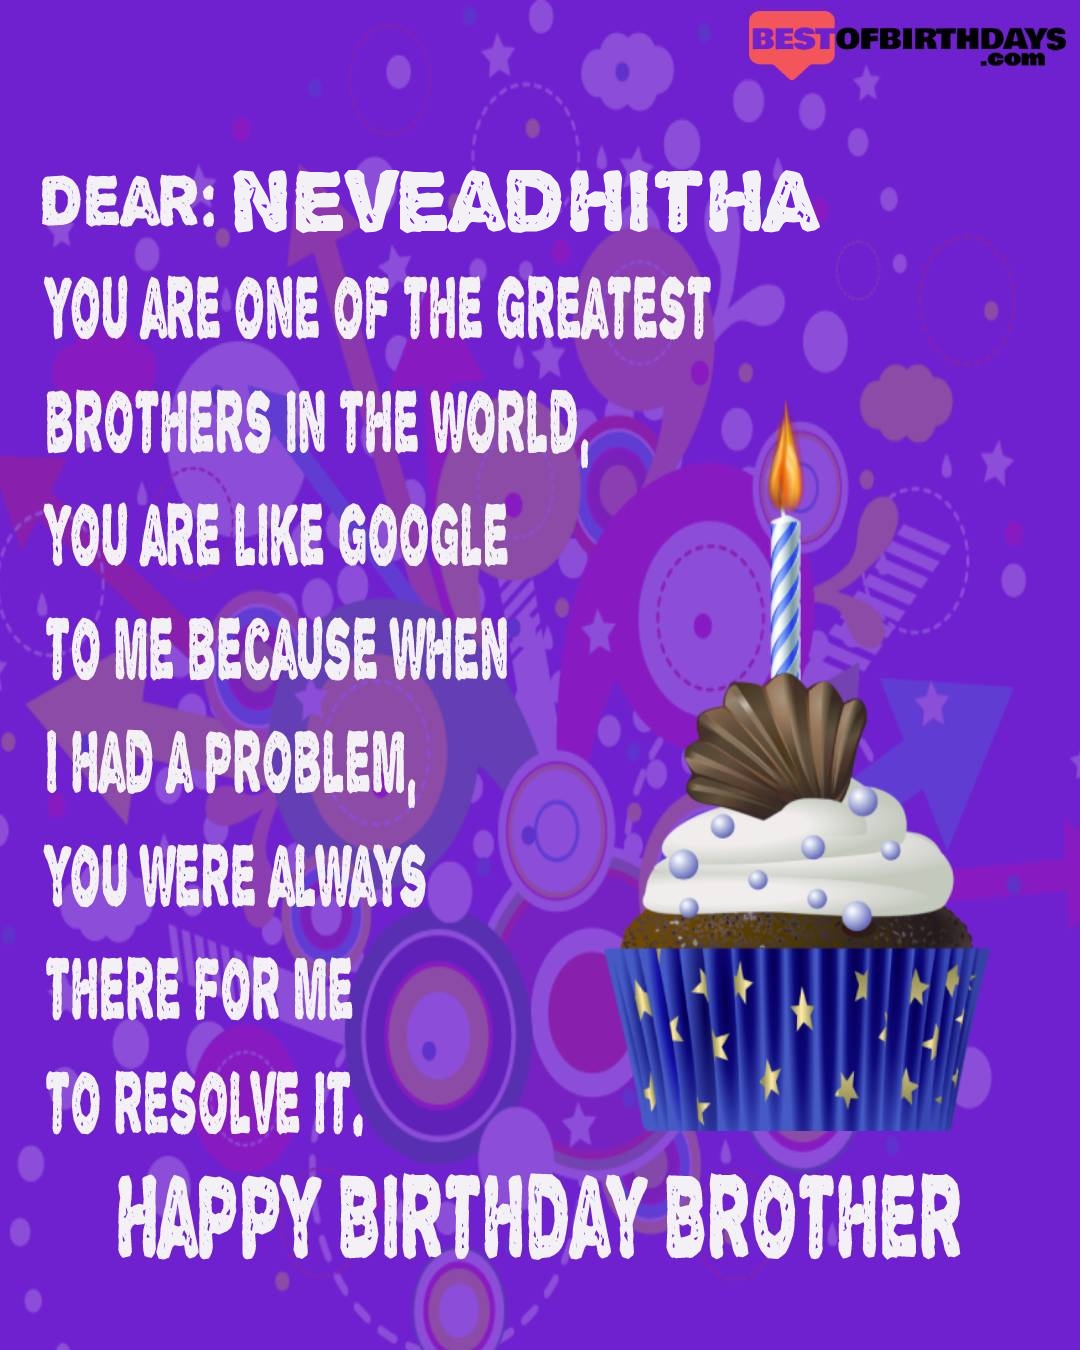 Happy birthday neveadhitha bhai brother bro